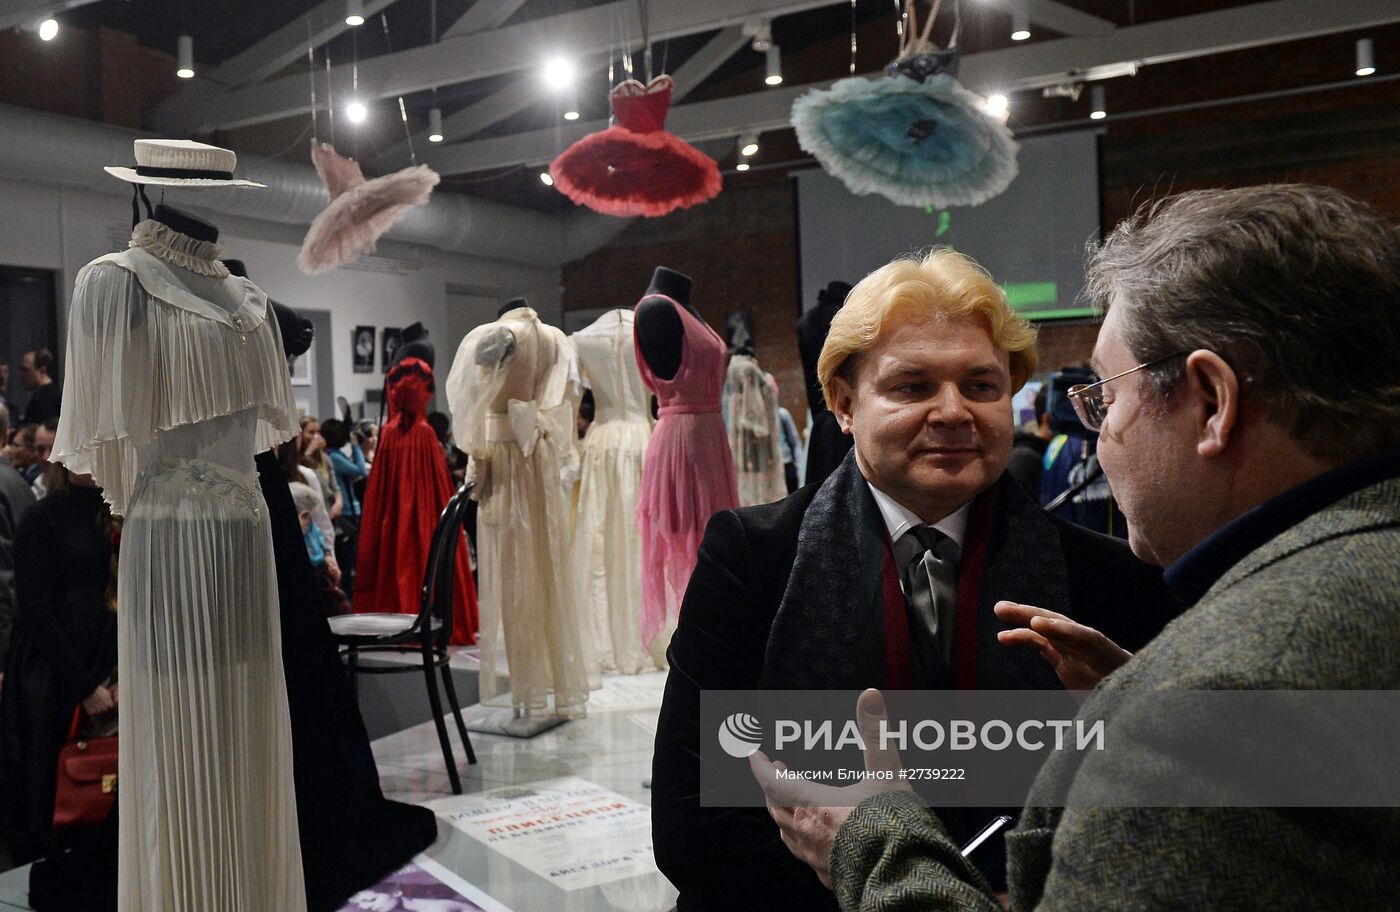 Открытие выставки "Беззаконная комета" Майи Плисецкой"